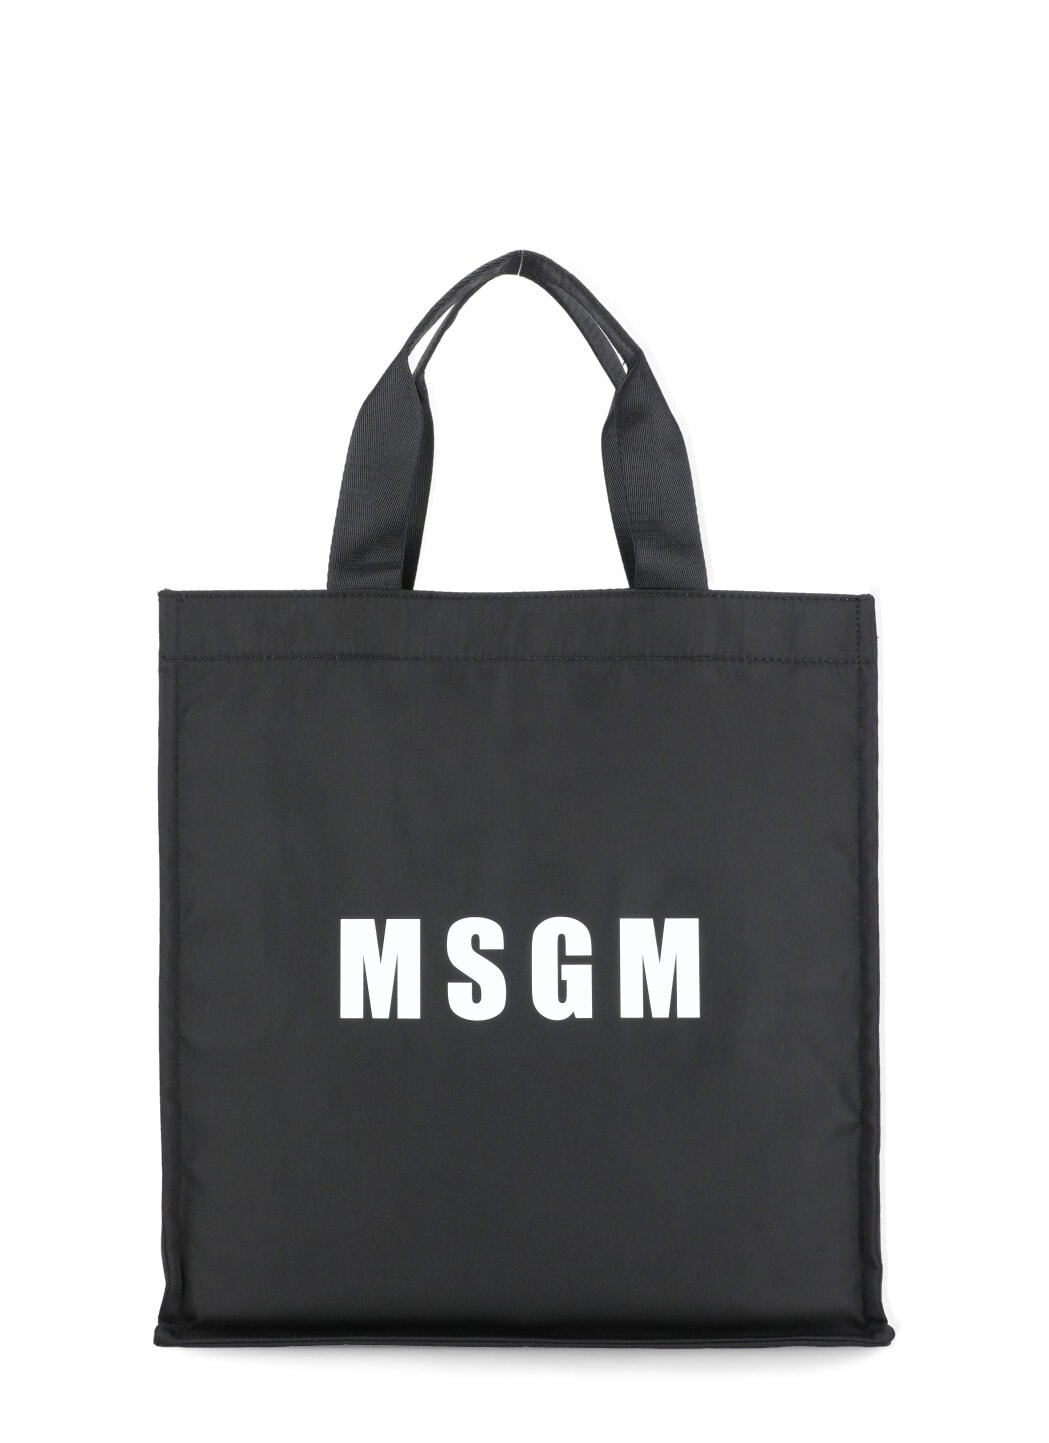 Msgm Tote Shoulder Bag In Black